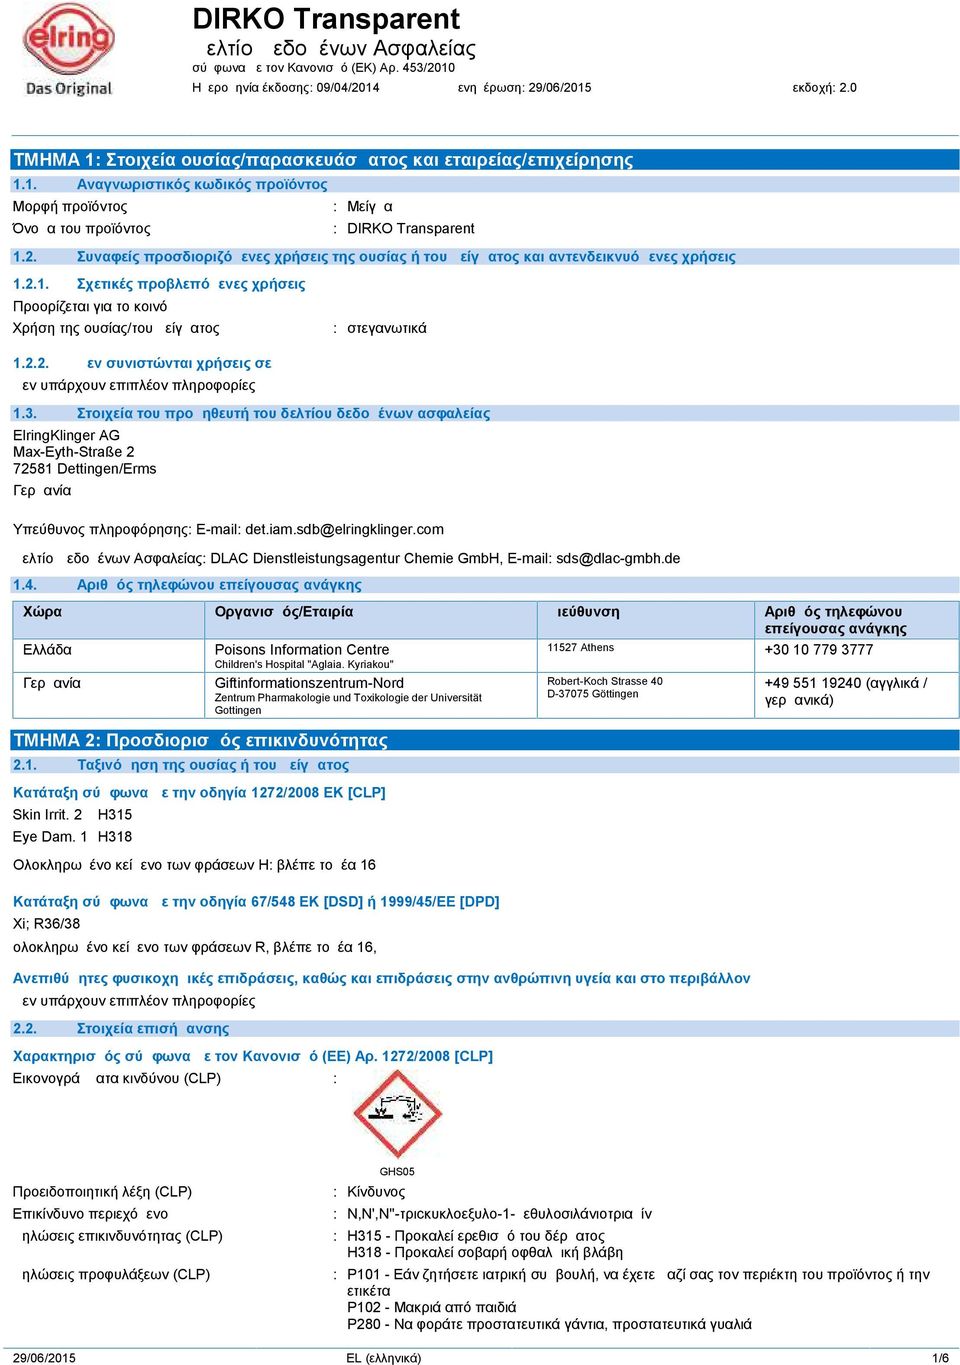 2.2. Δεν συνιστώνται χρήσεις σε 1.3. Στοιχεία του προμηθευτή του δελτίου δεδομένων ασφαλείας ElringKlinger AG Max-Eyth-Straße 2 72581 Dettingen/Erms Γερμανία Υπεύθυνος πληροφόρησης: E-mail: det.iam.